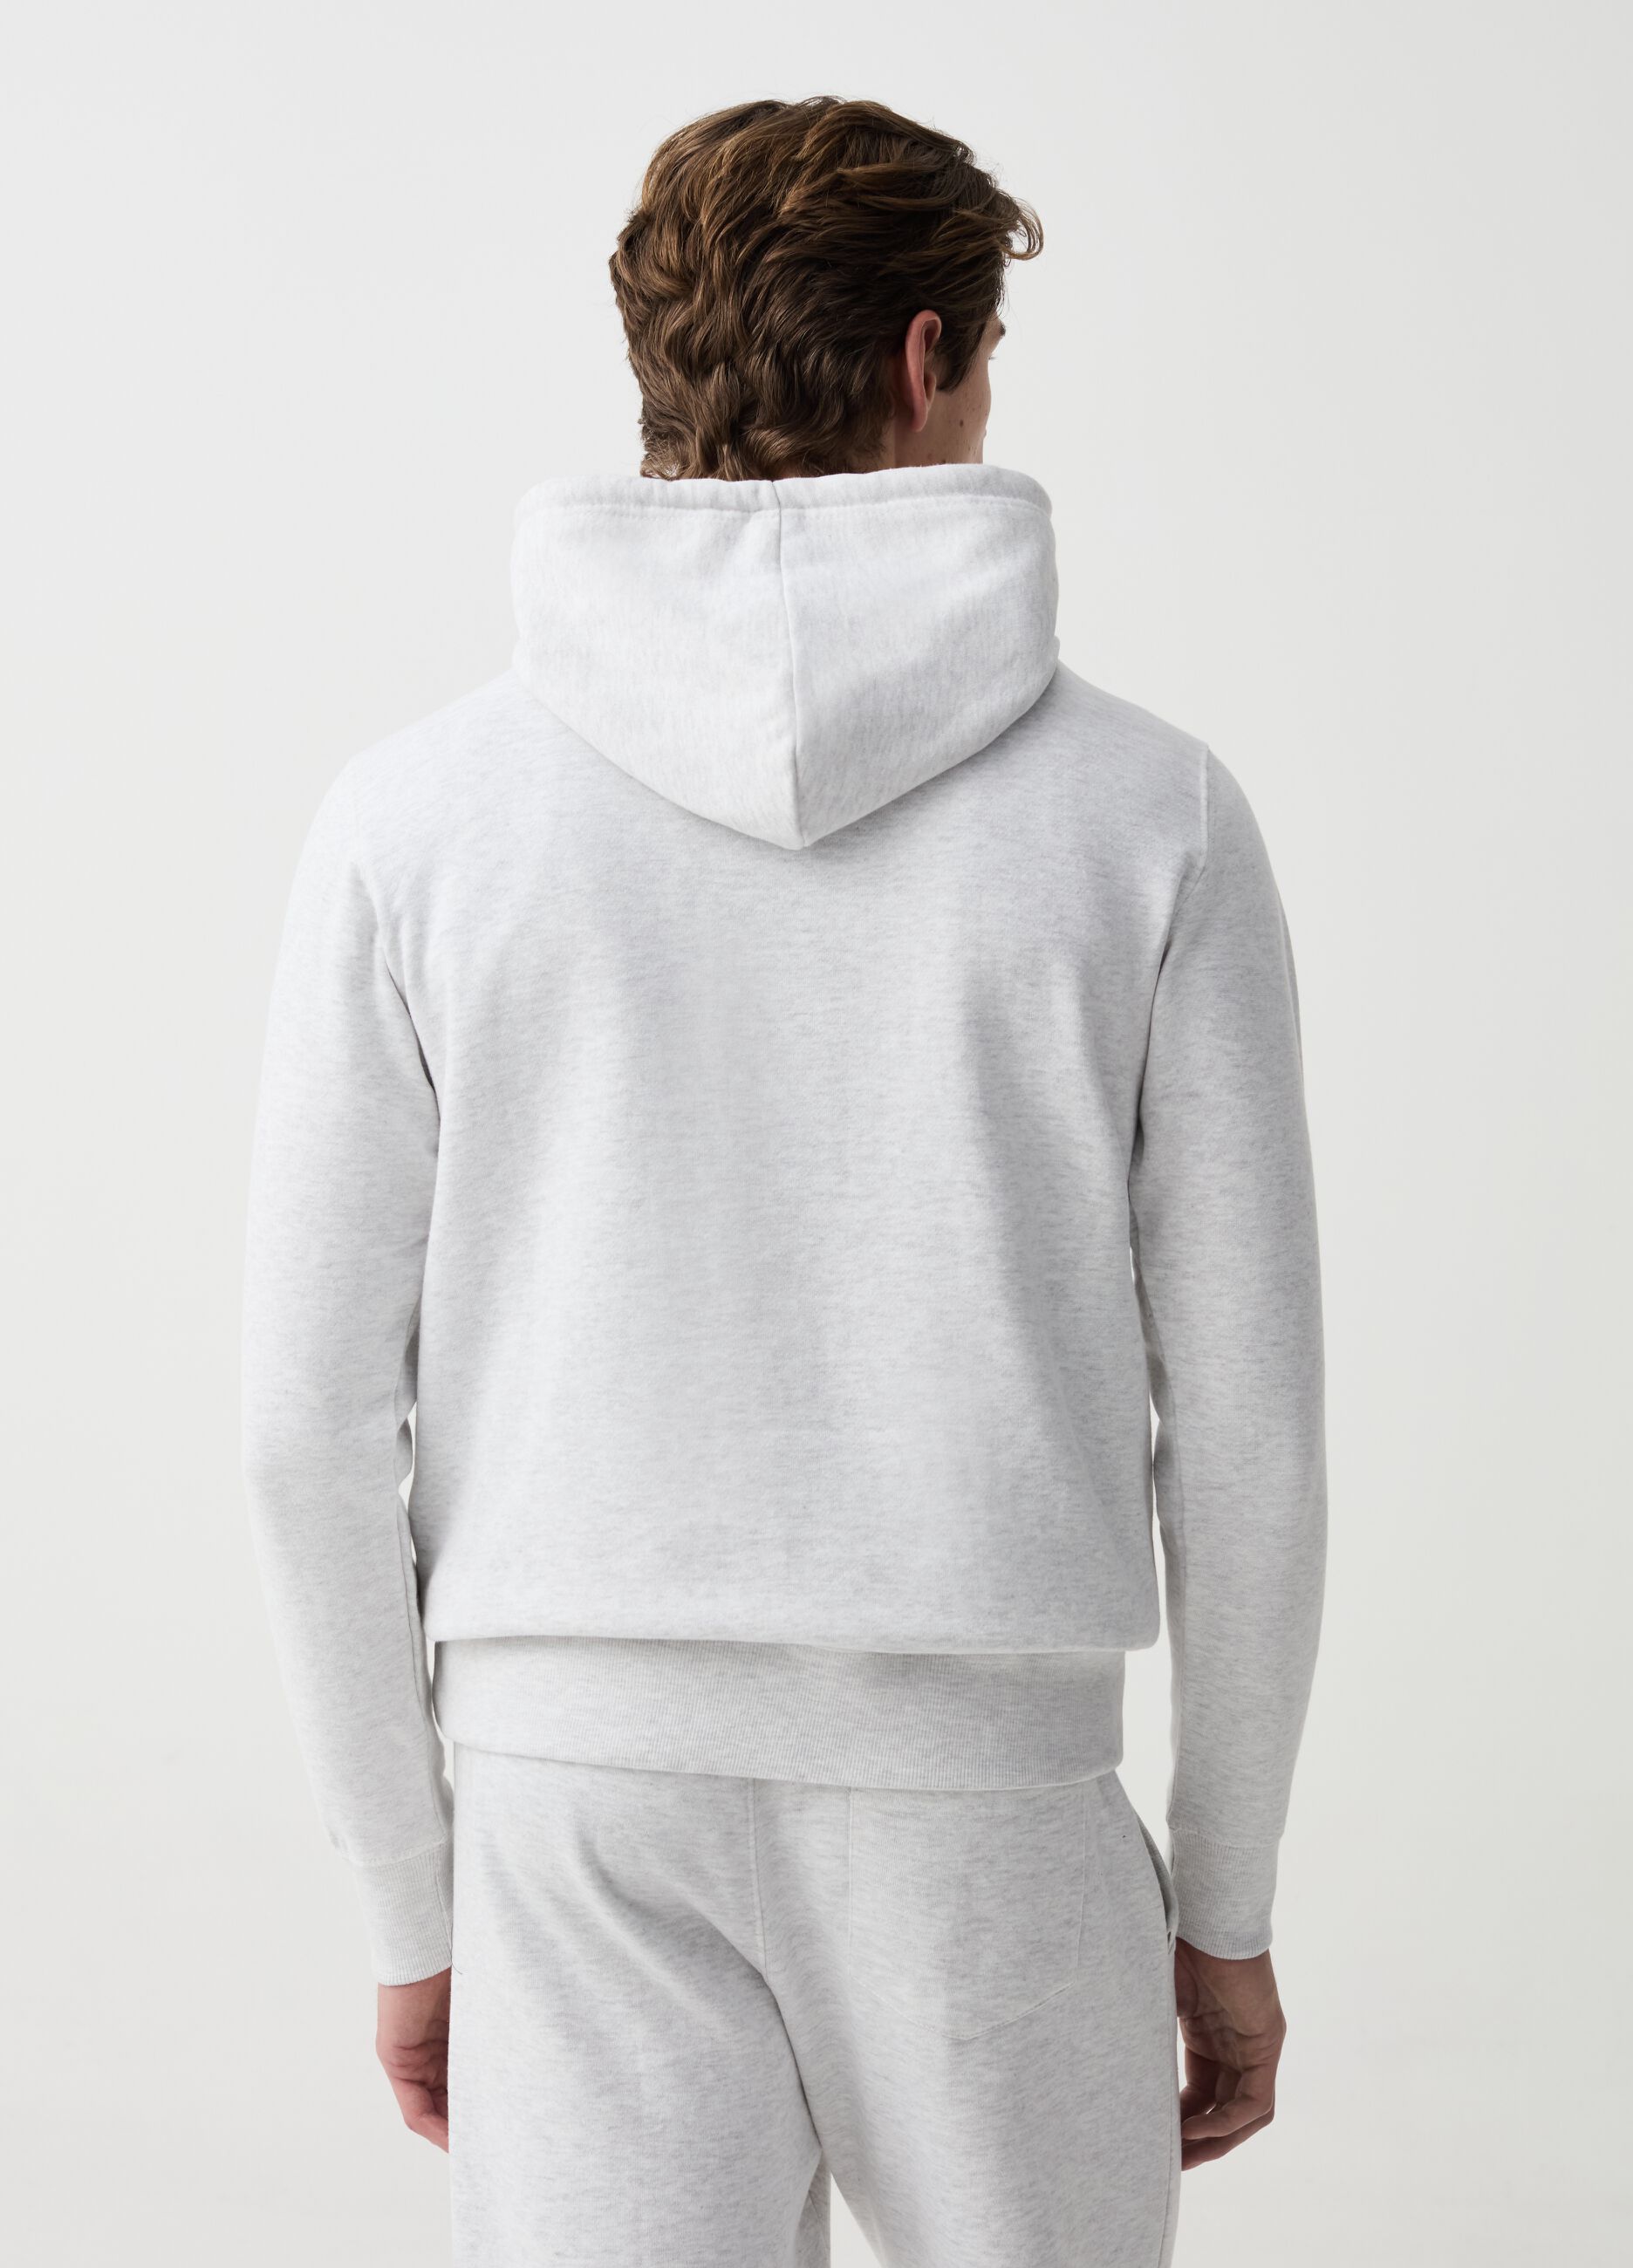 Sweatshirt with hood and pocket